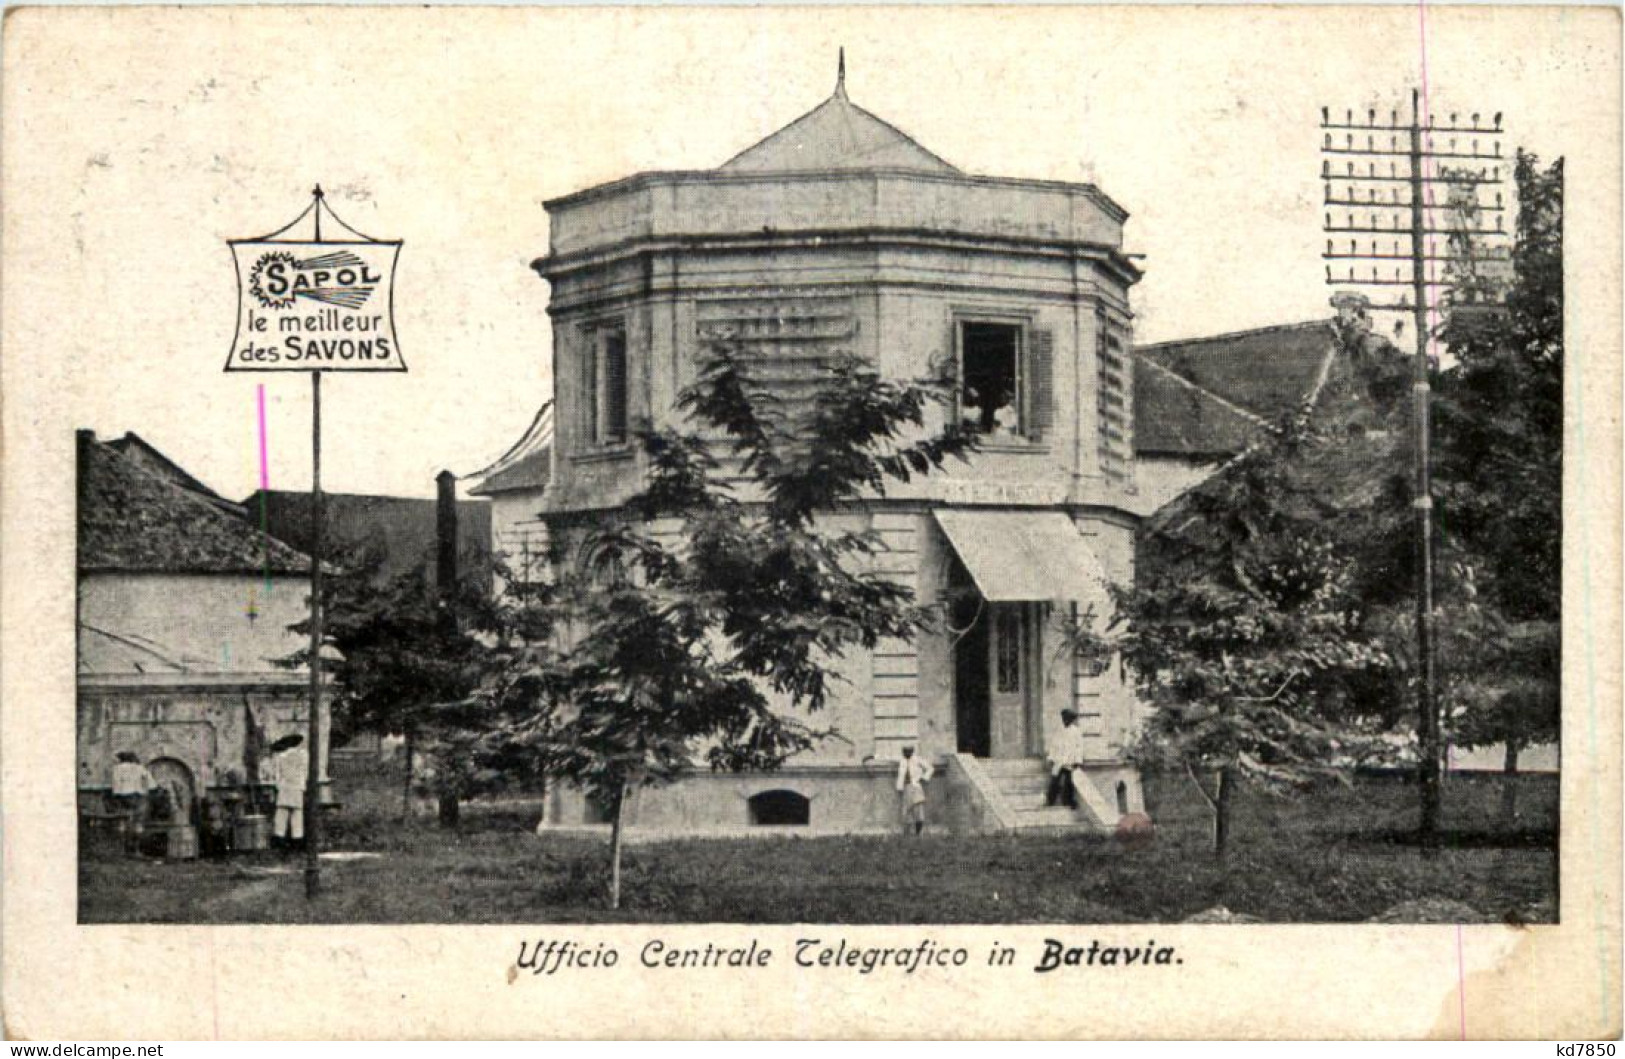 Batavia - Ufficio Centrale Telegrafico - Indonesia